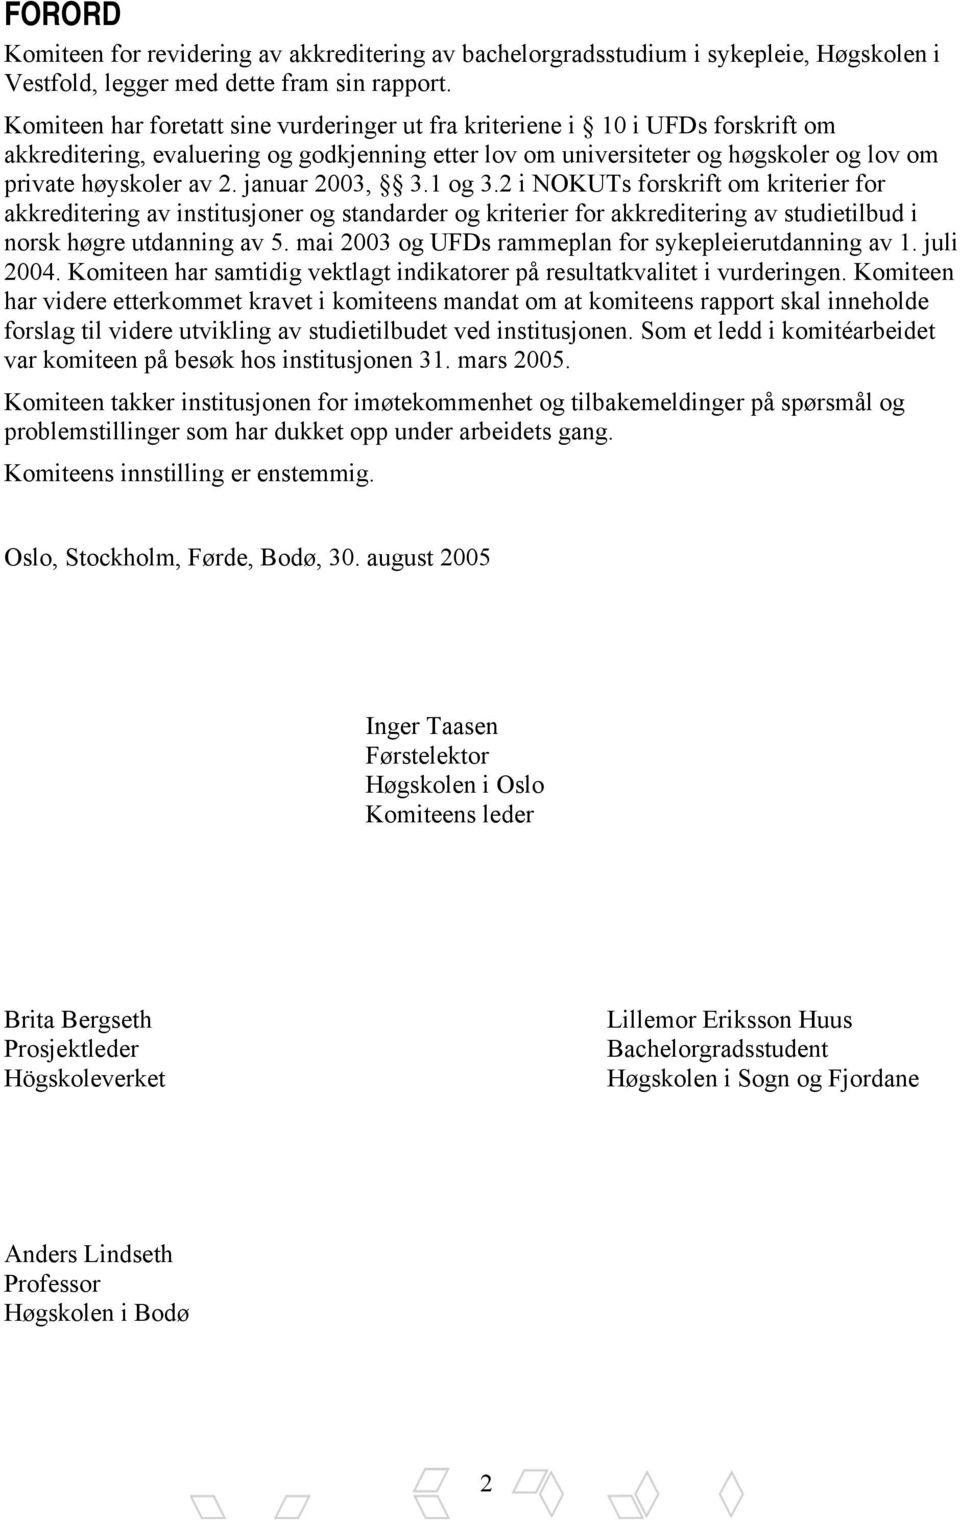 januar 2003, 3.1 og 3.2 i NOKUTs forskrift om kriterier for akkreditering av institusjoner og standarder og kriterier for akkreditering av studietilbud i norsk høgre utdanning av 5.